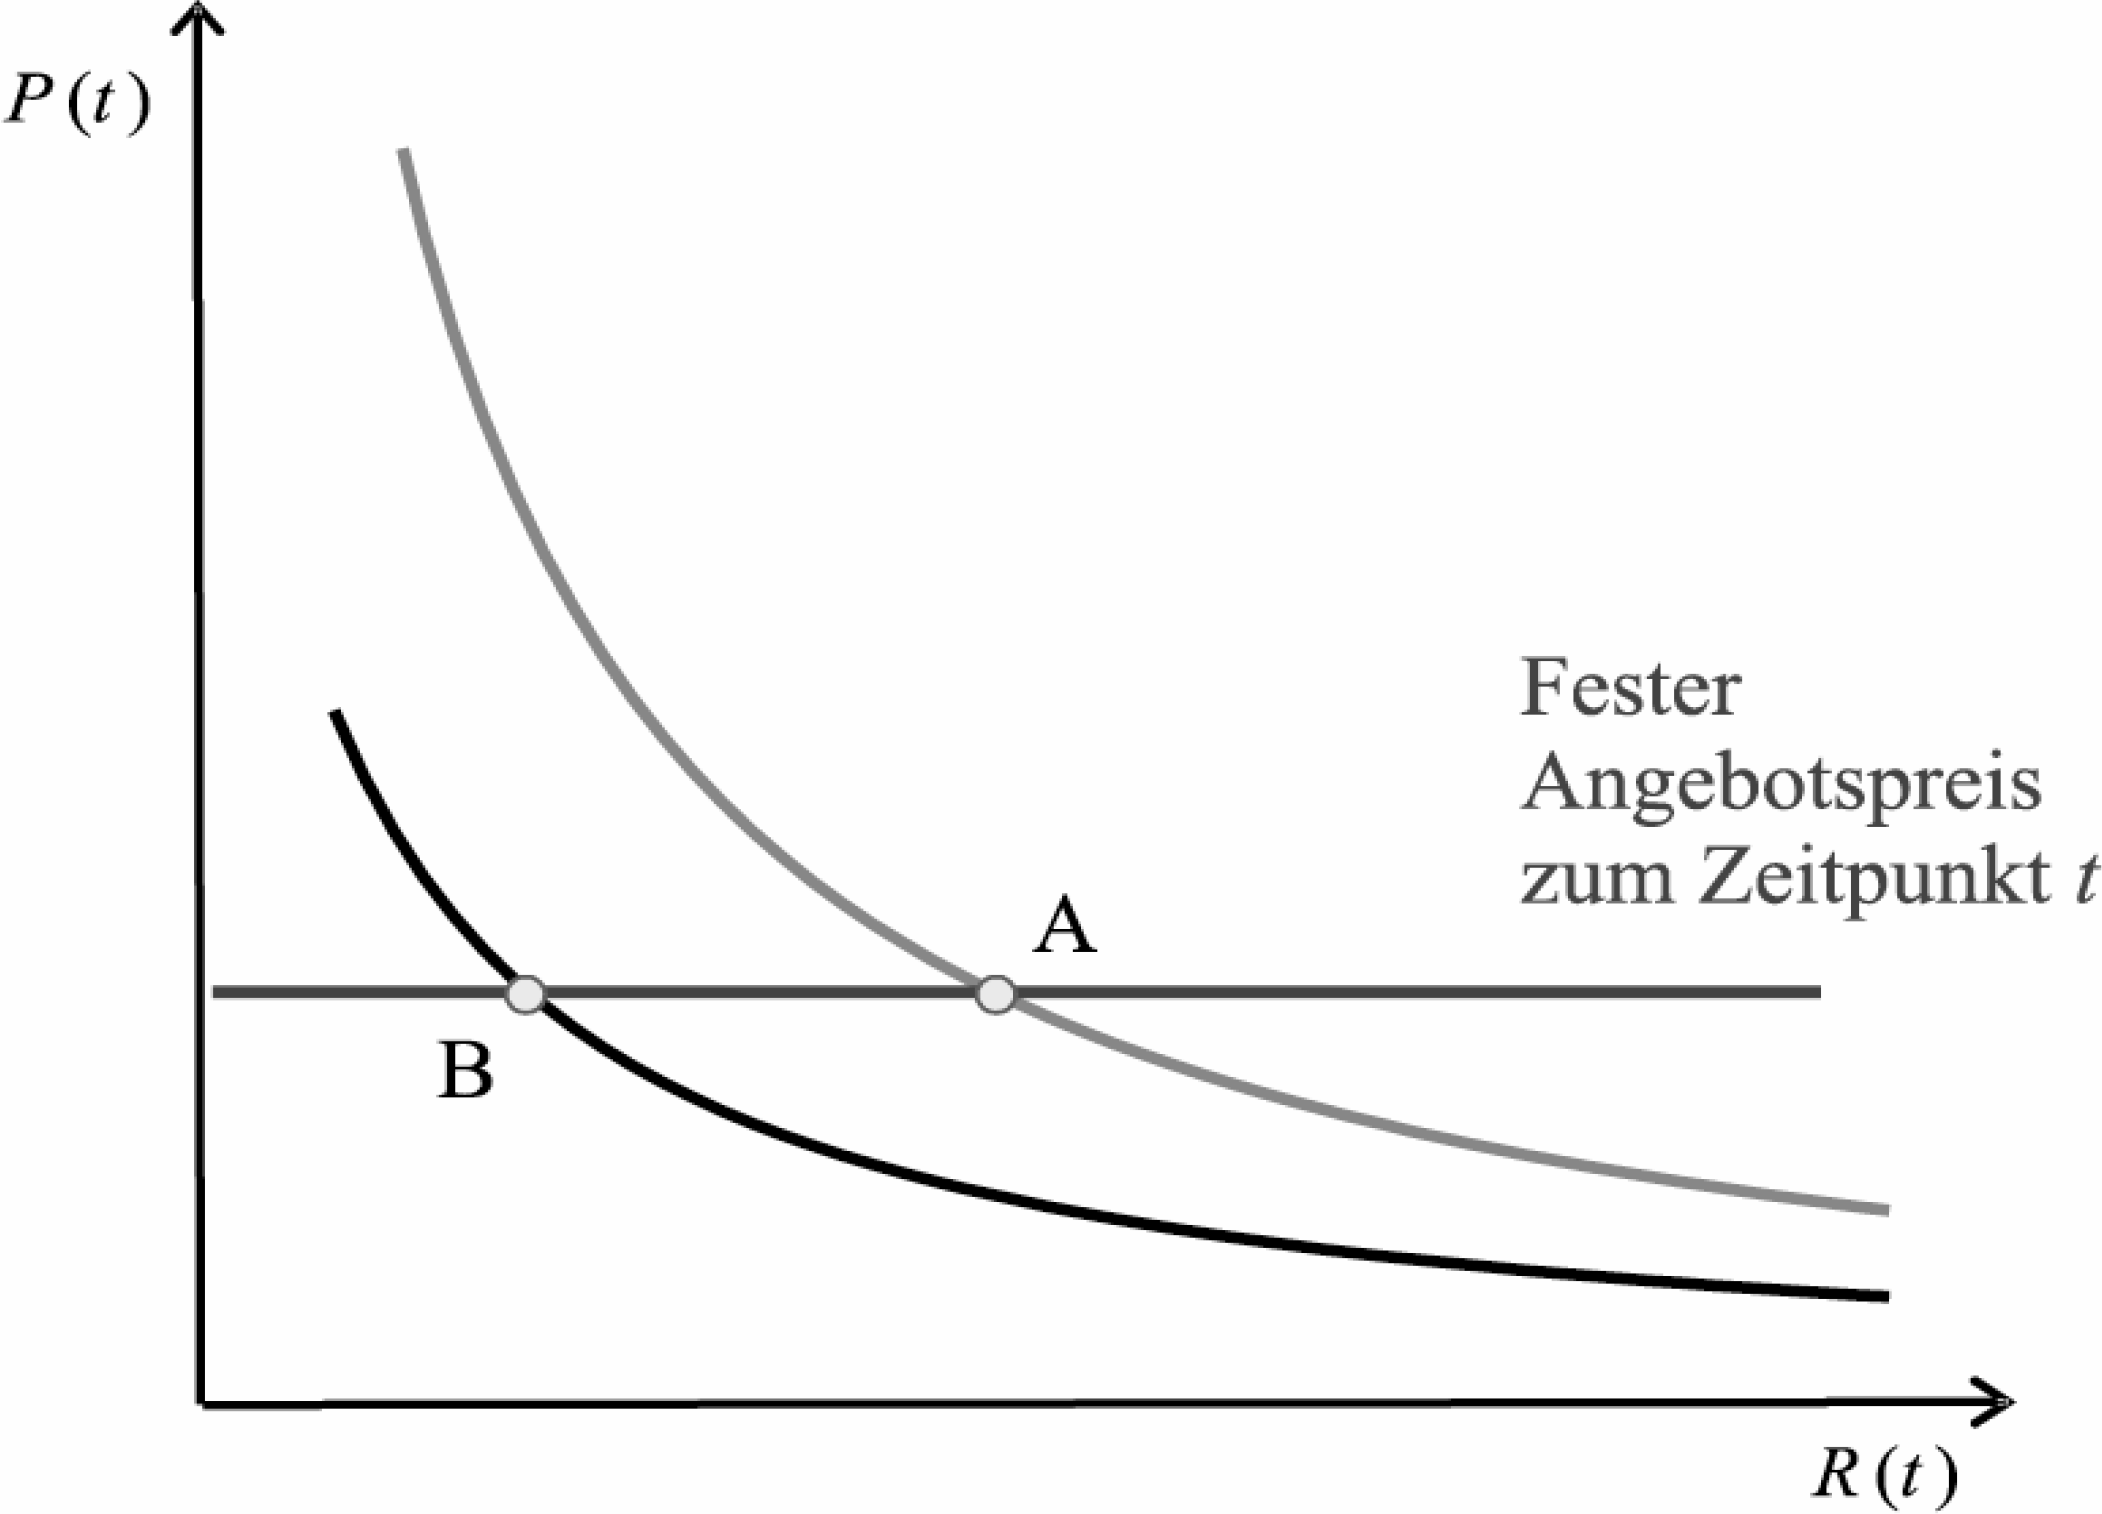 Hans-Werner Sinn Abbildung 2 Elastisches Angebot Abbildung 3 Unelastisches Angebot Preisänderungen folgen, ist die Annahme richtig, dass sich